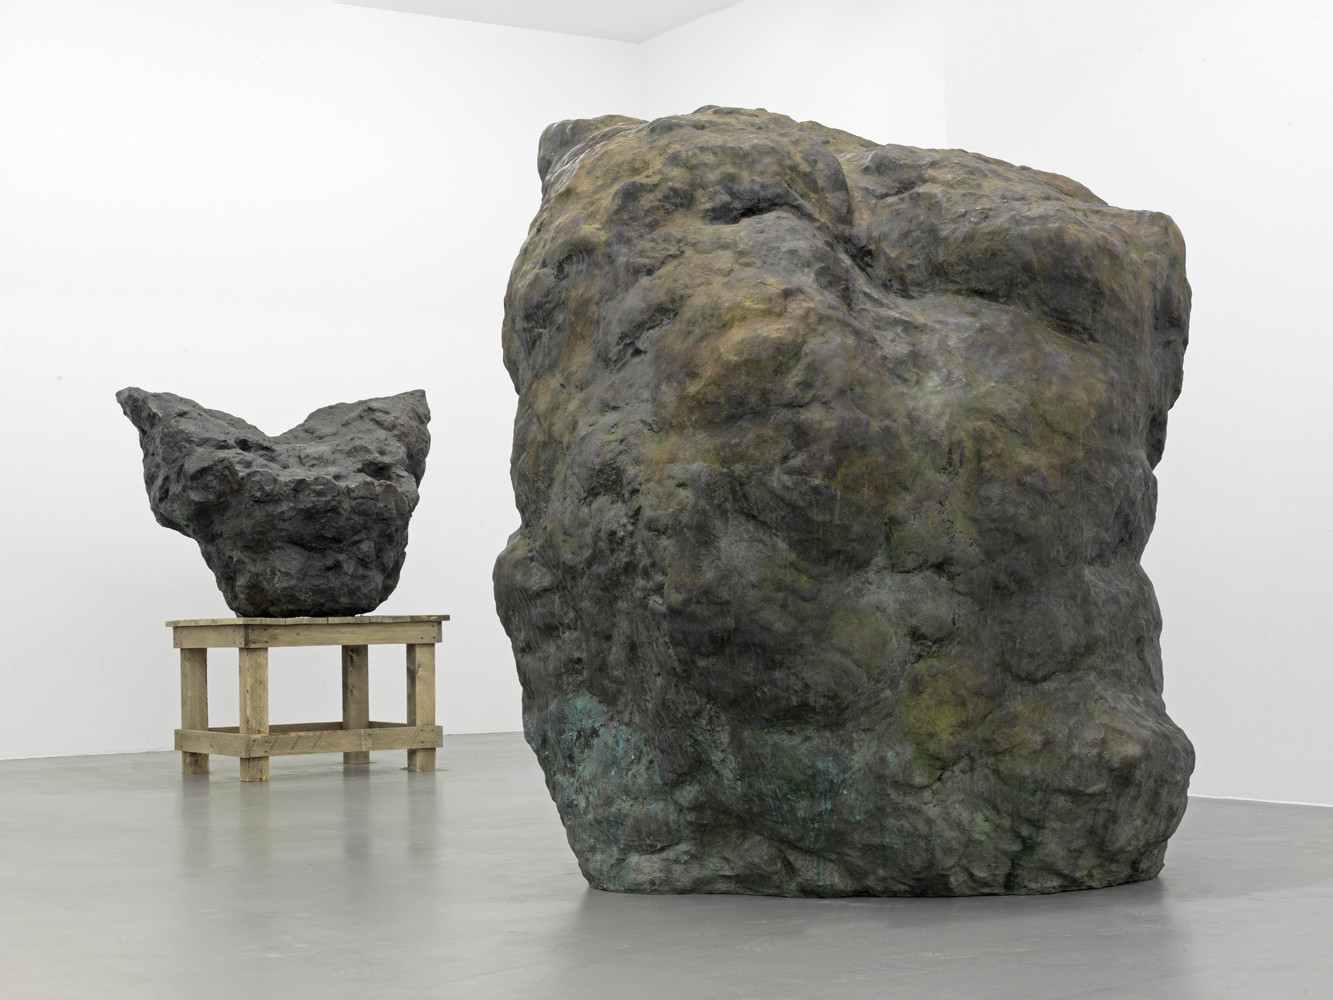 William Tucker, ‘Sculpture’, Installation view, Buchmann Galerie, 2013